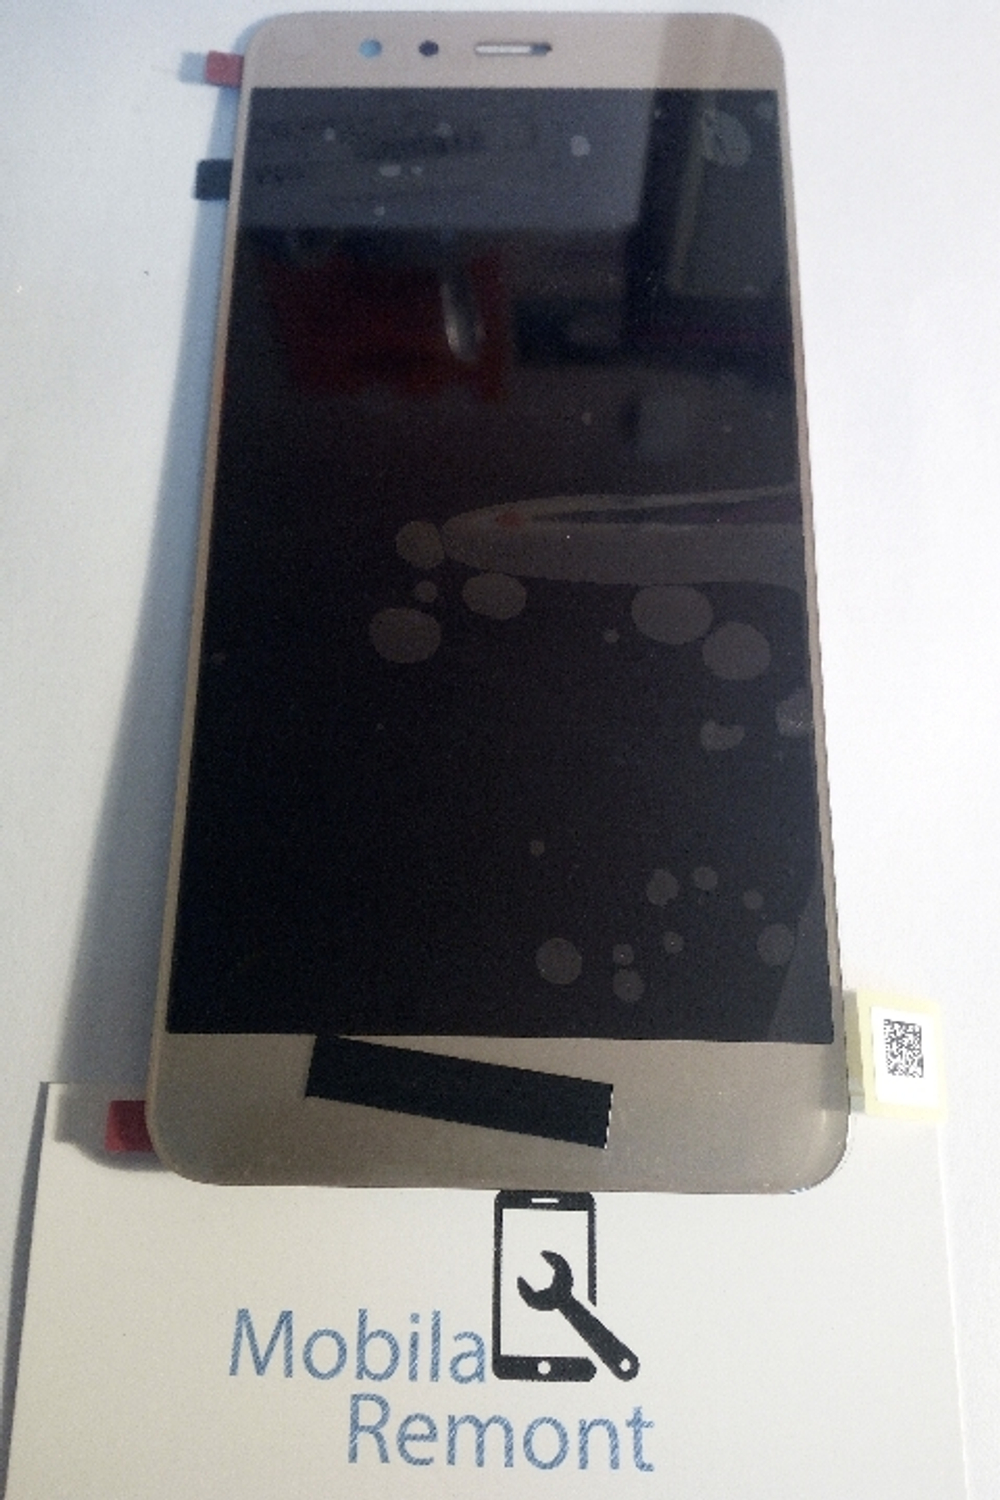 Дисплей для Huawei P10 Lite в сборе с тачскрином Золото